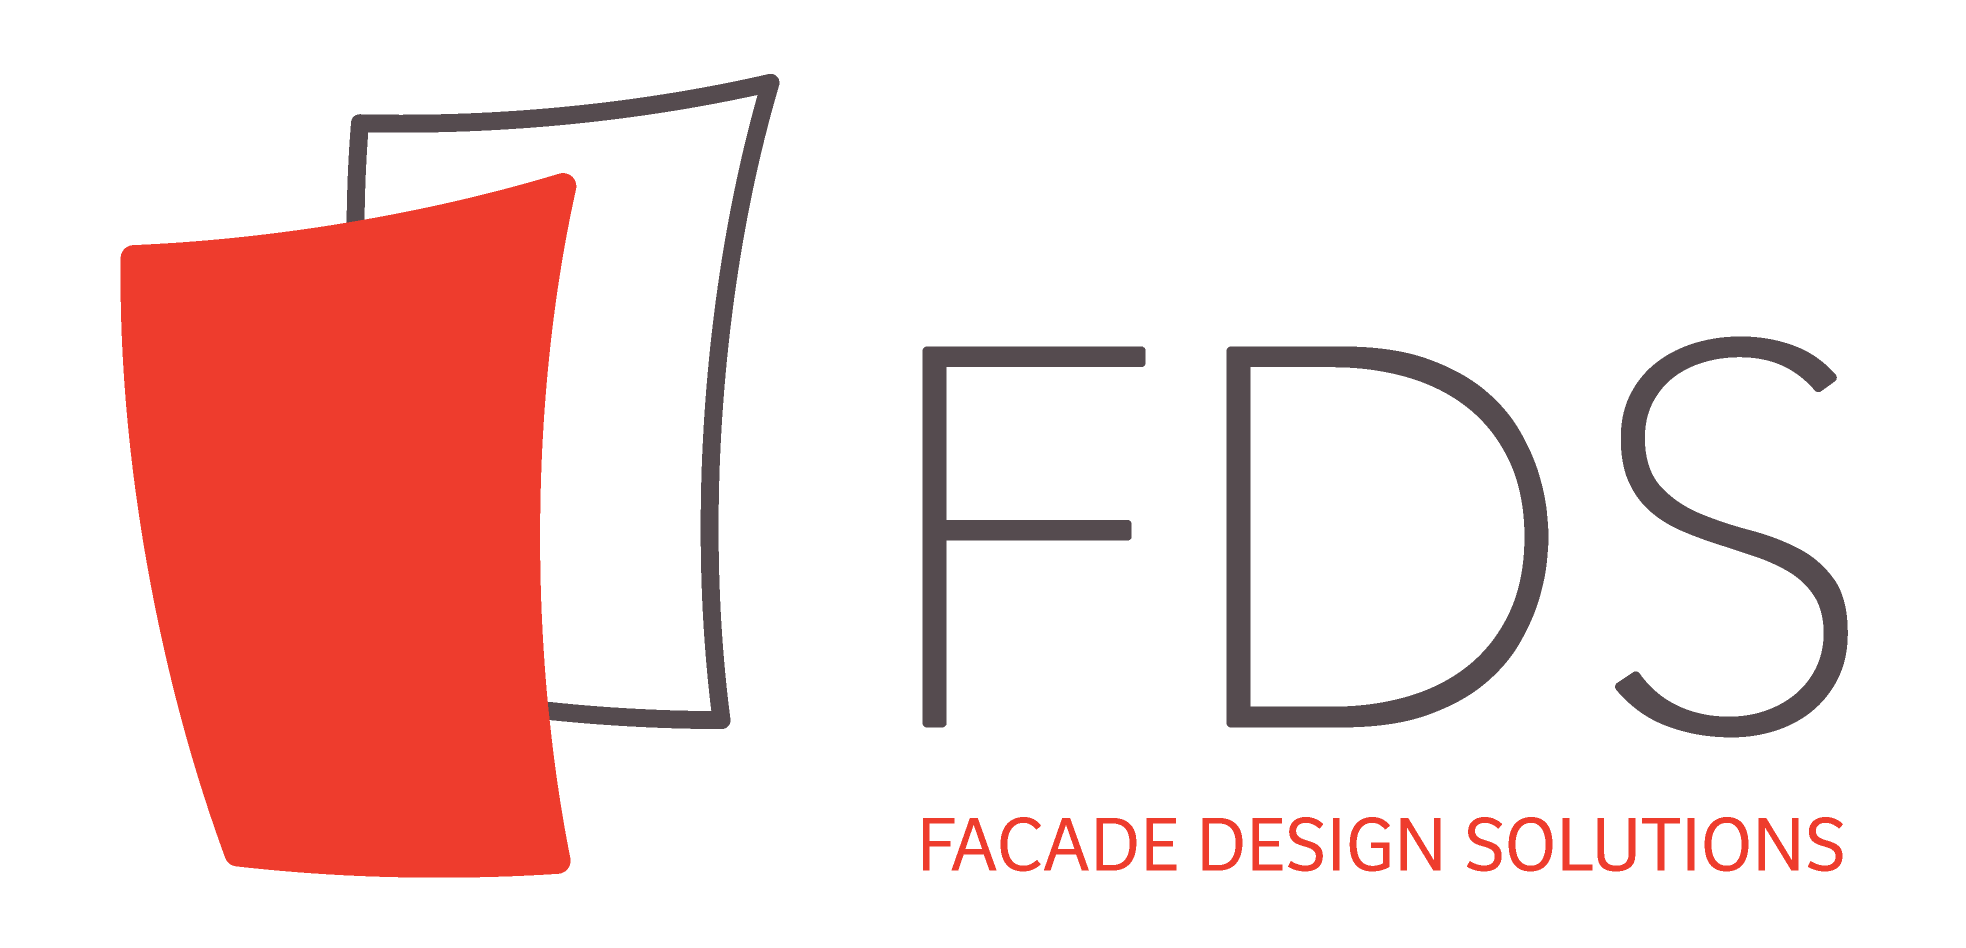 Facade Design Solutions